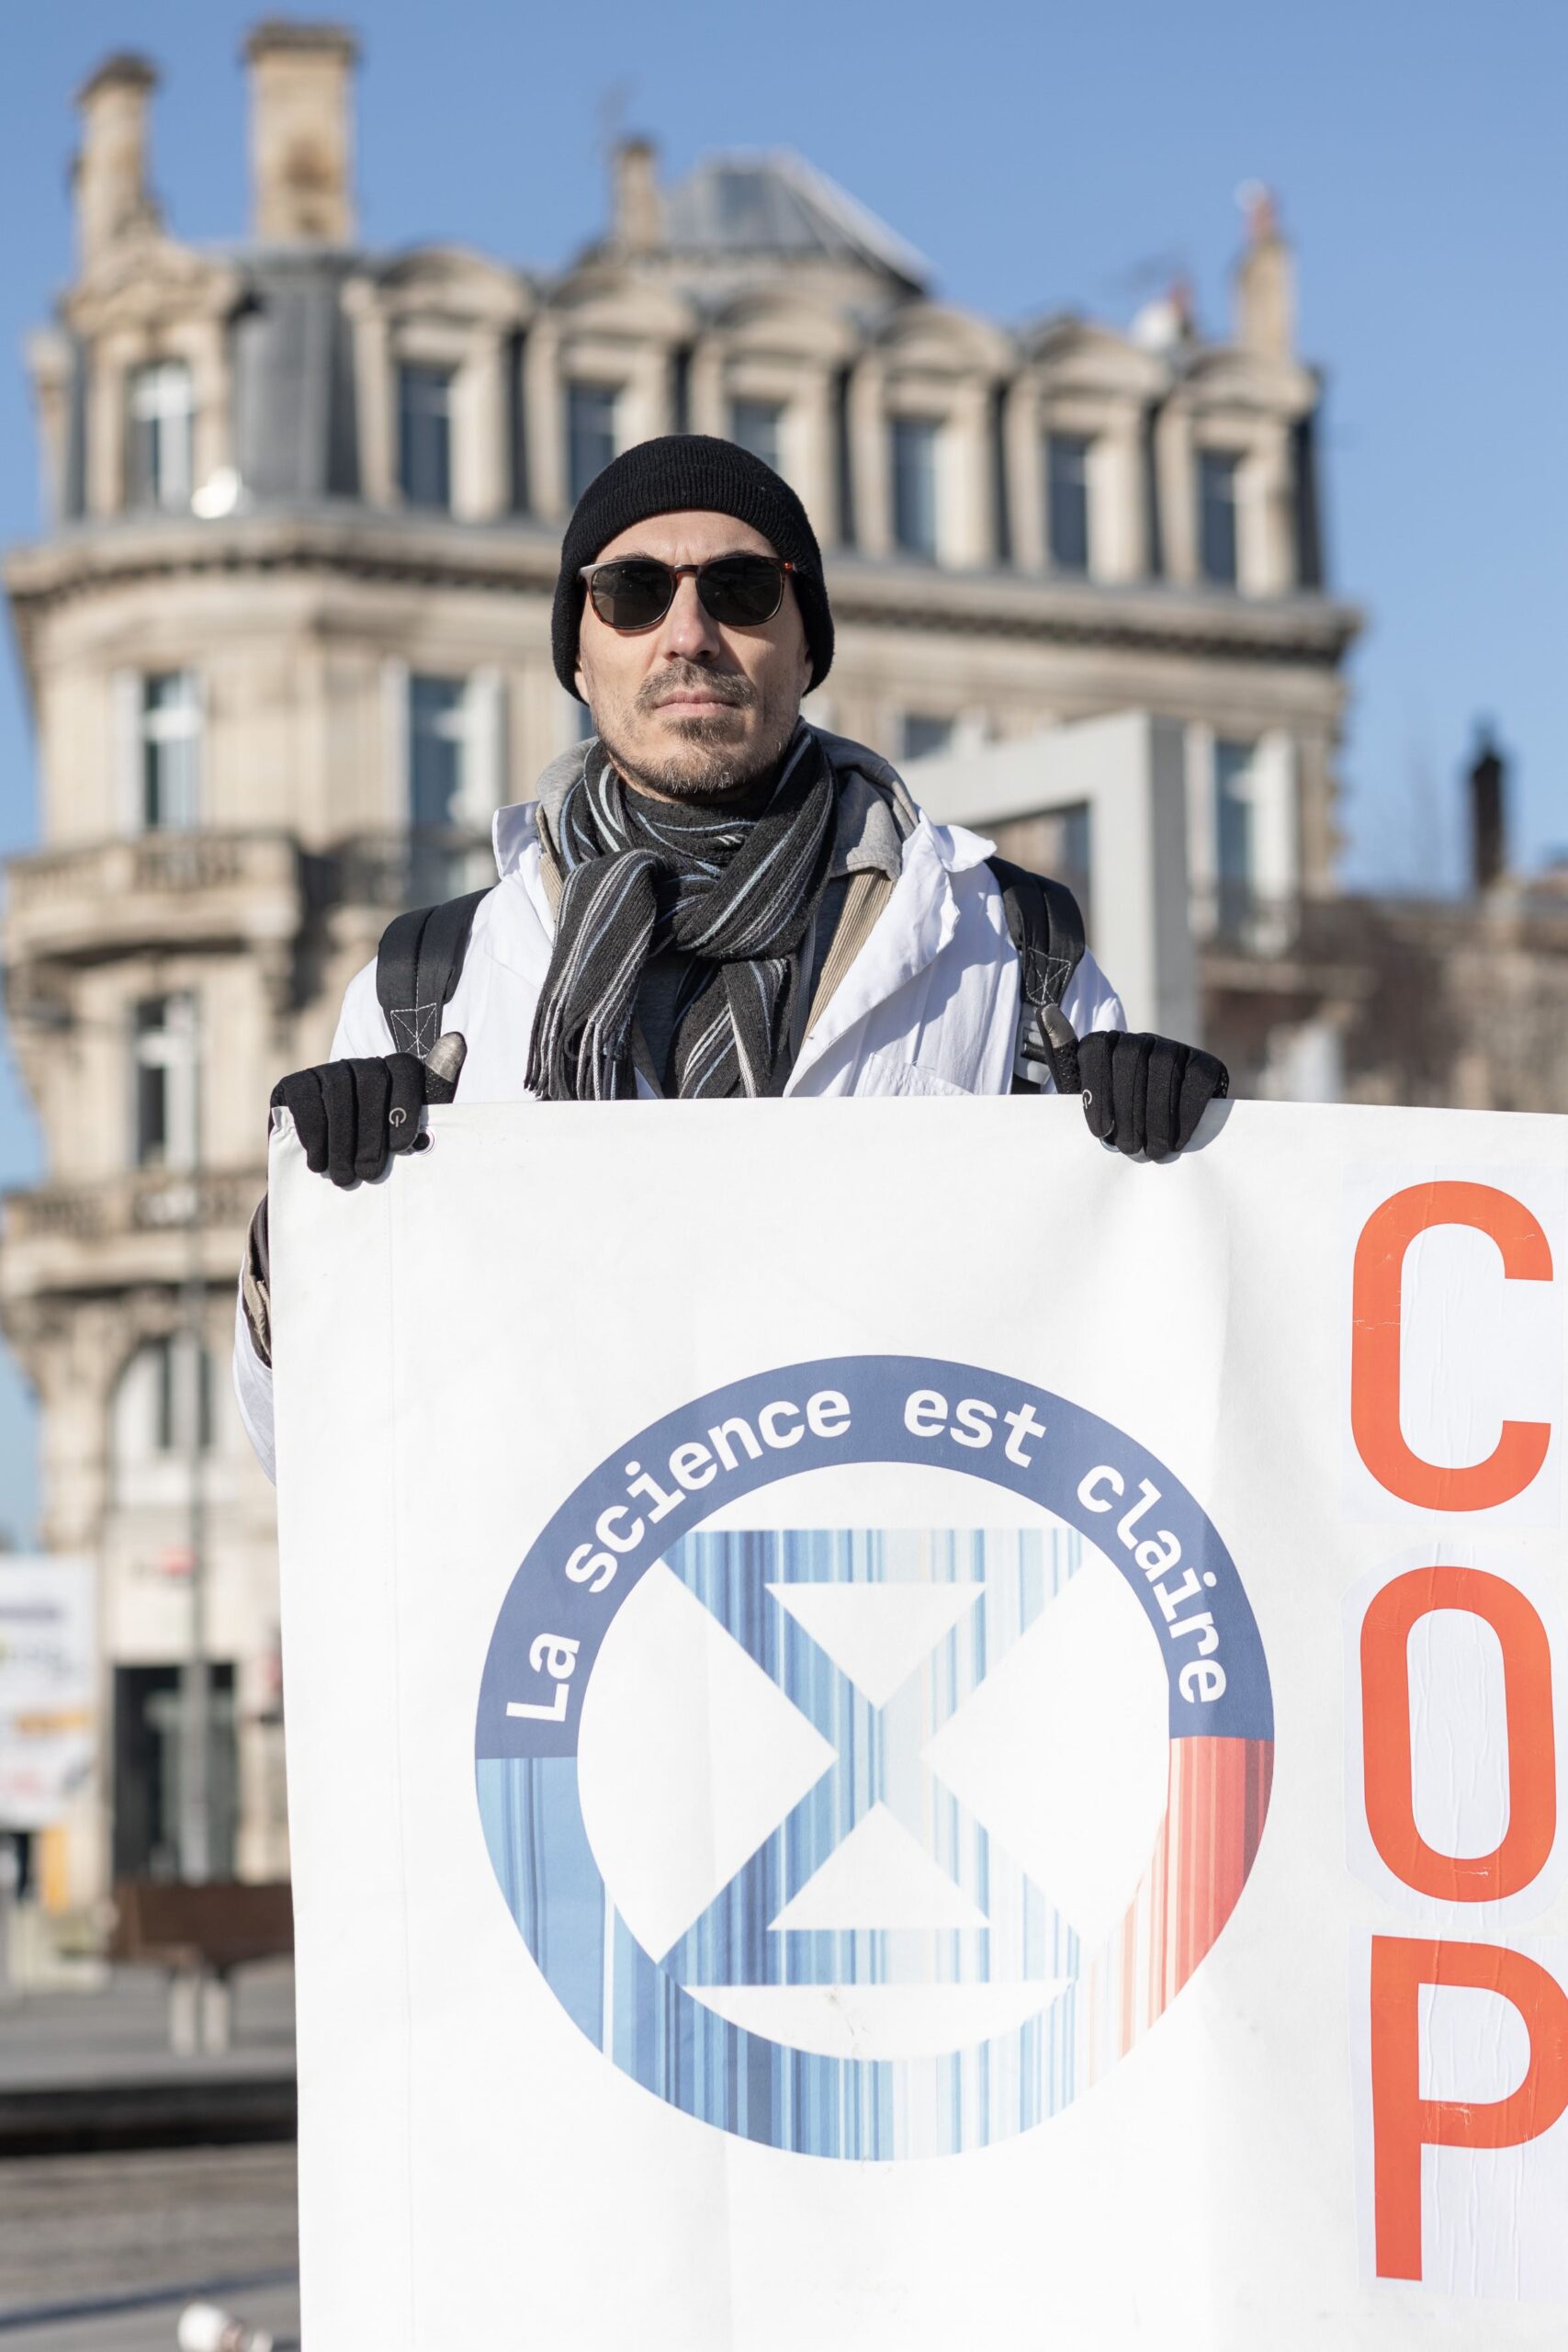 "la science est claire", COP28